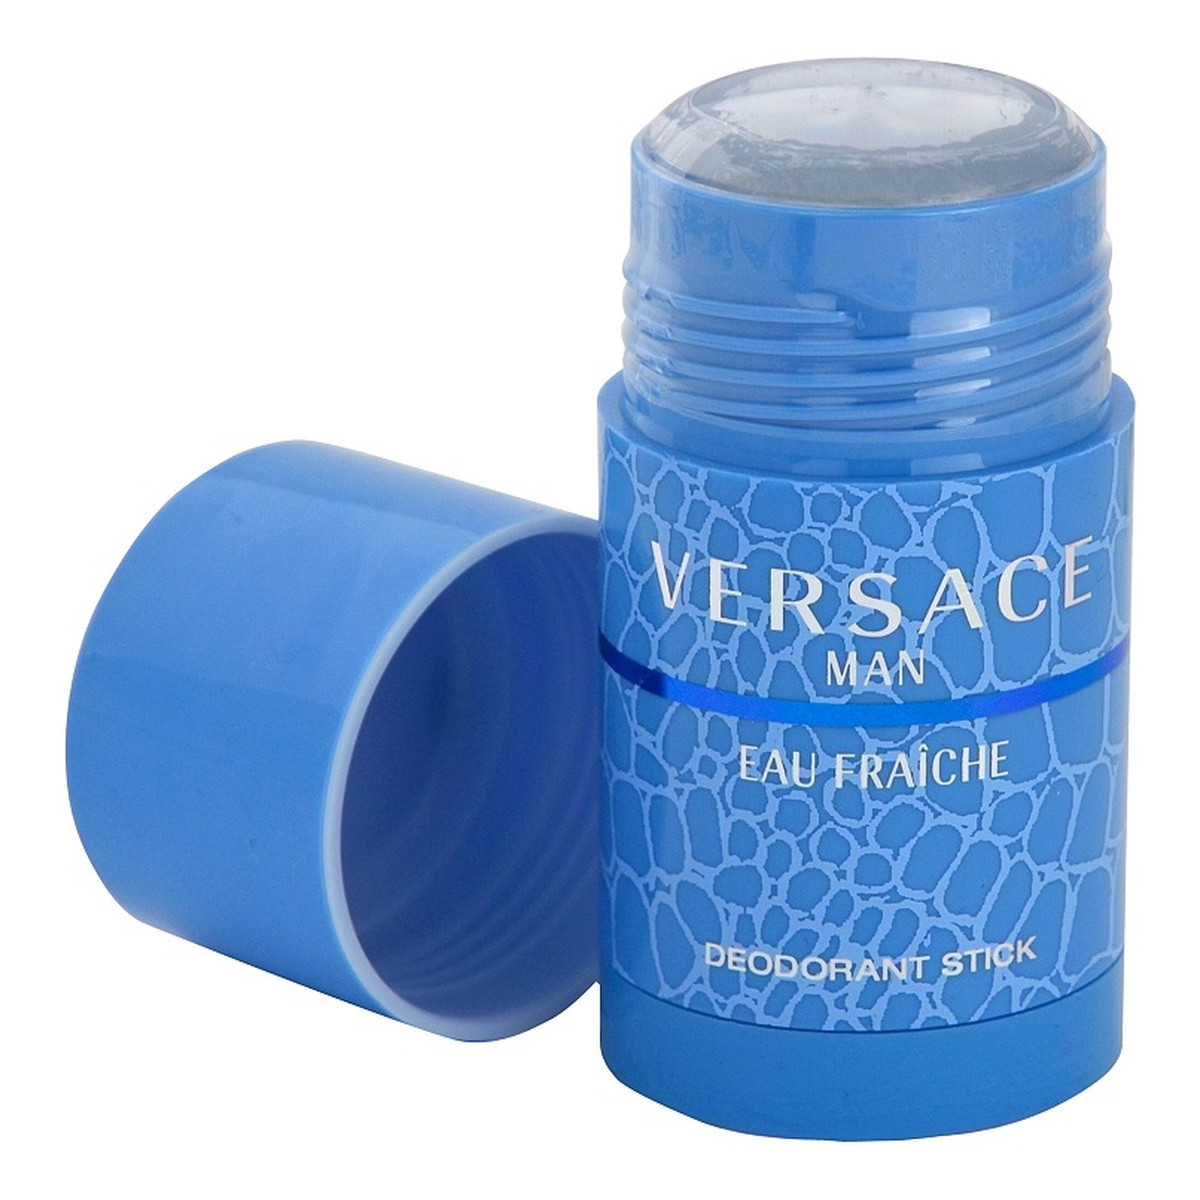 Versace Eau Fraiche Man dezodorant w sztyfcie dla mężczyzn 75ml